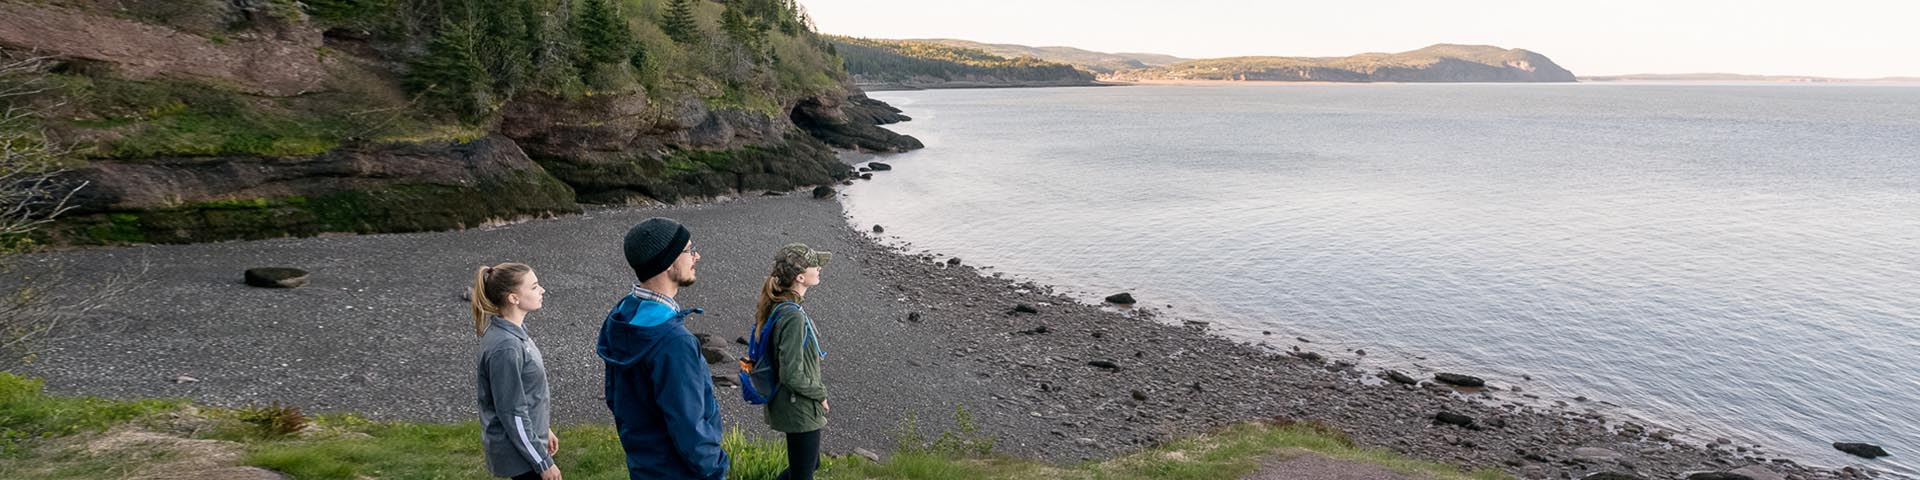 Trois visiteurs du parc se tenant sur une falaise maritime face à la baie de Fundy.